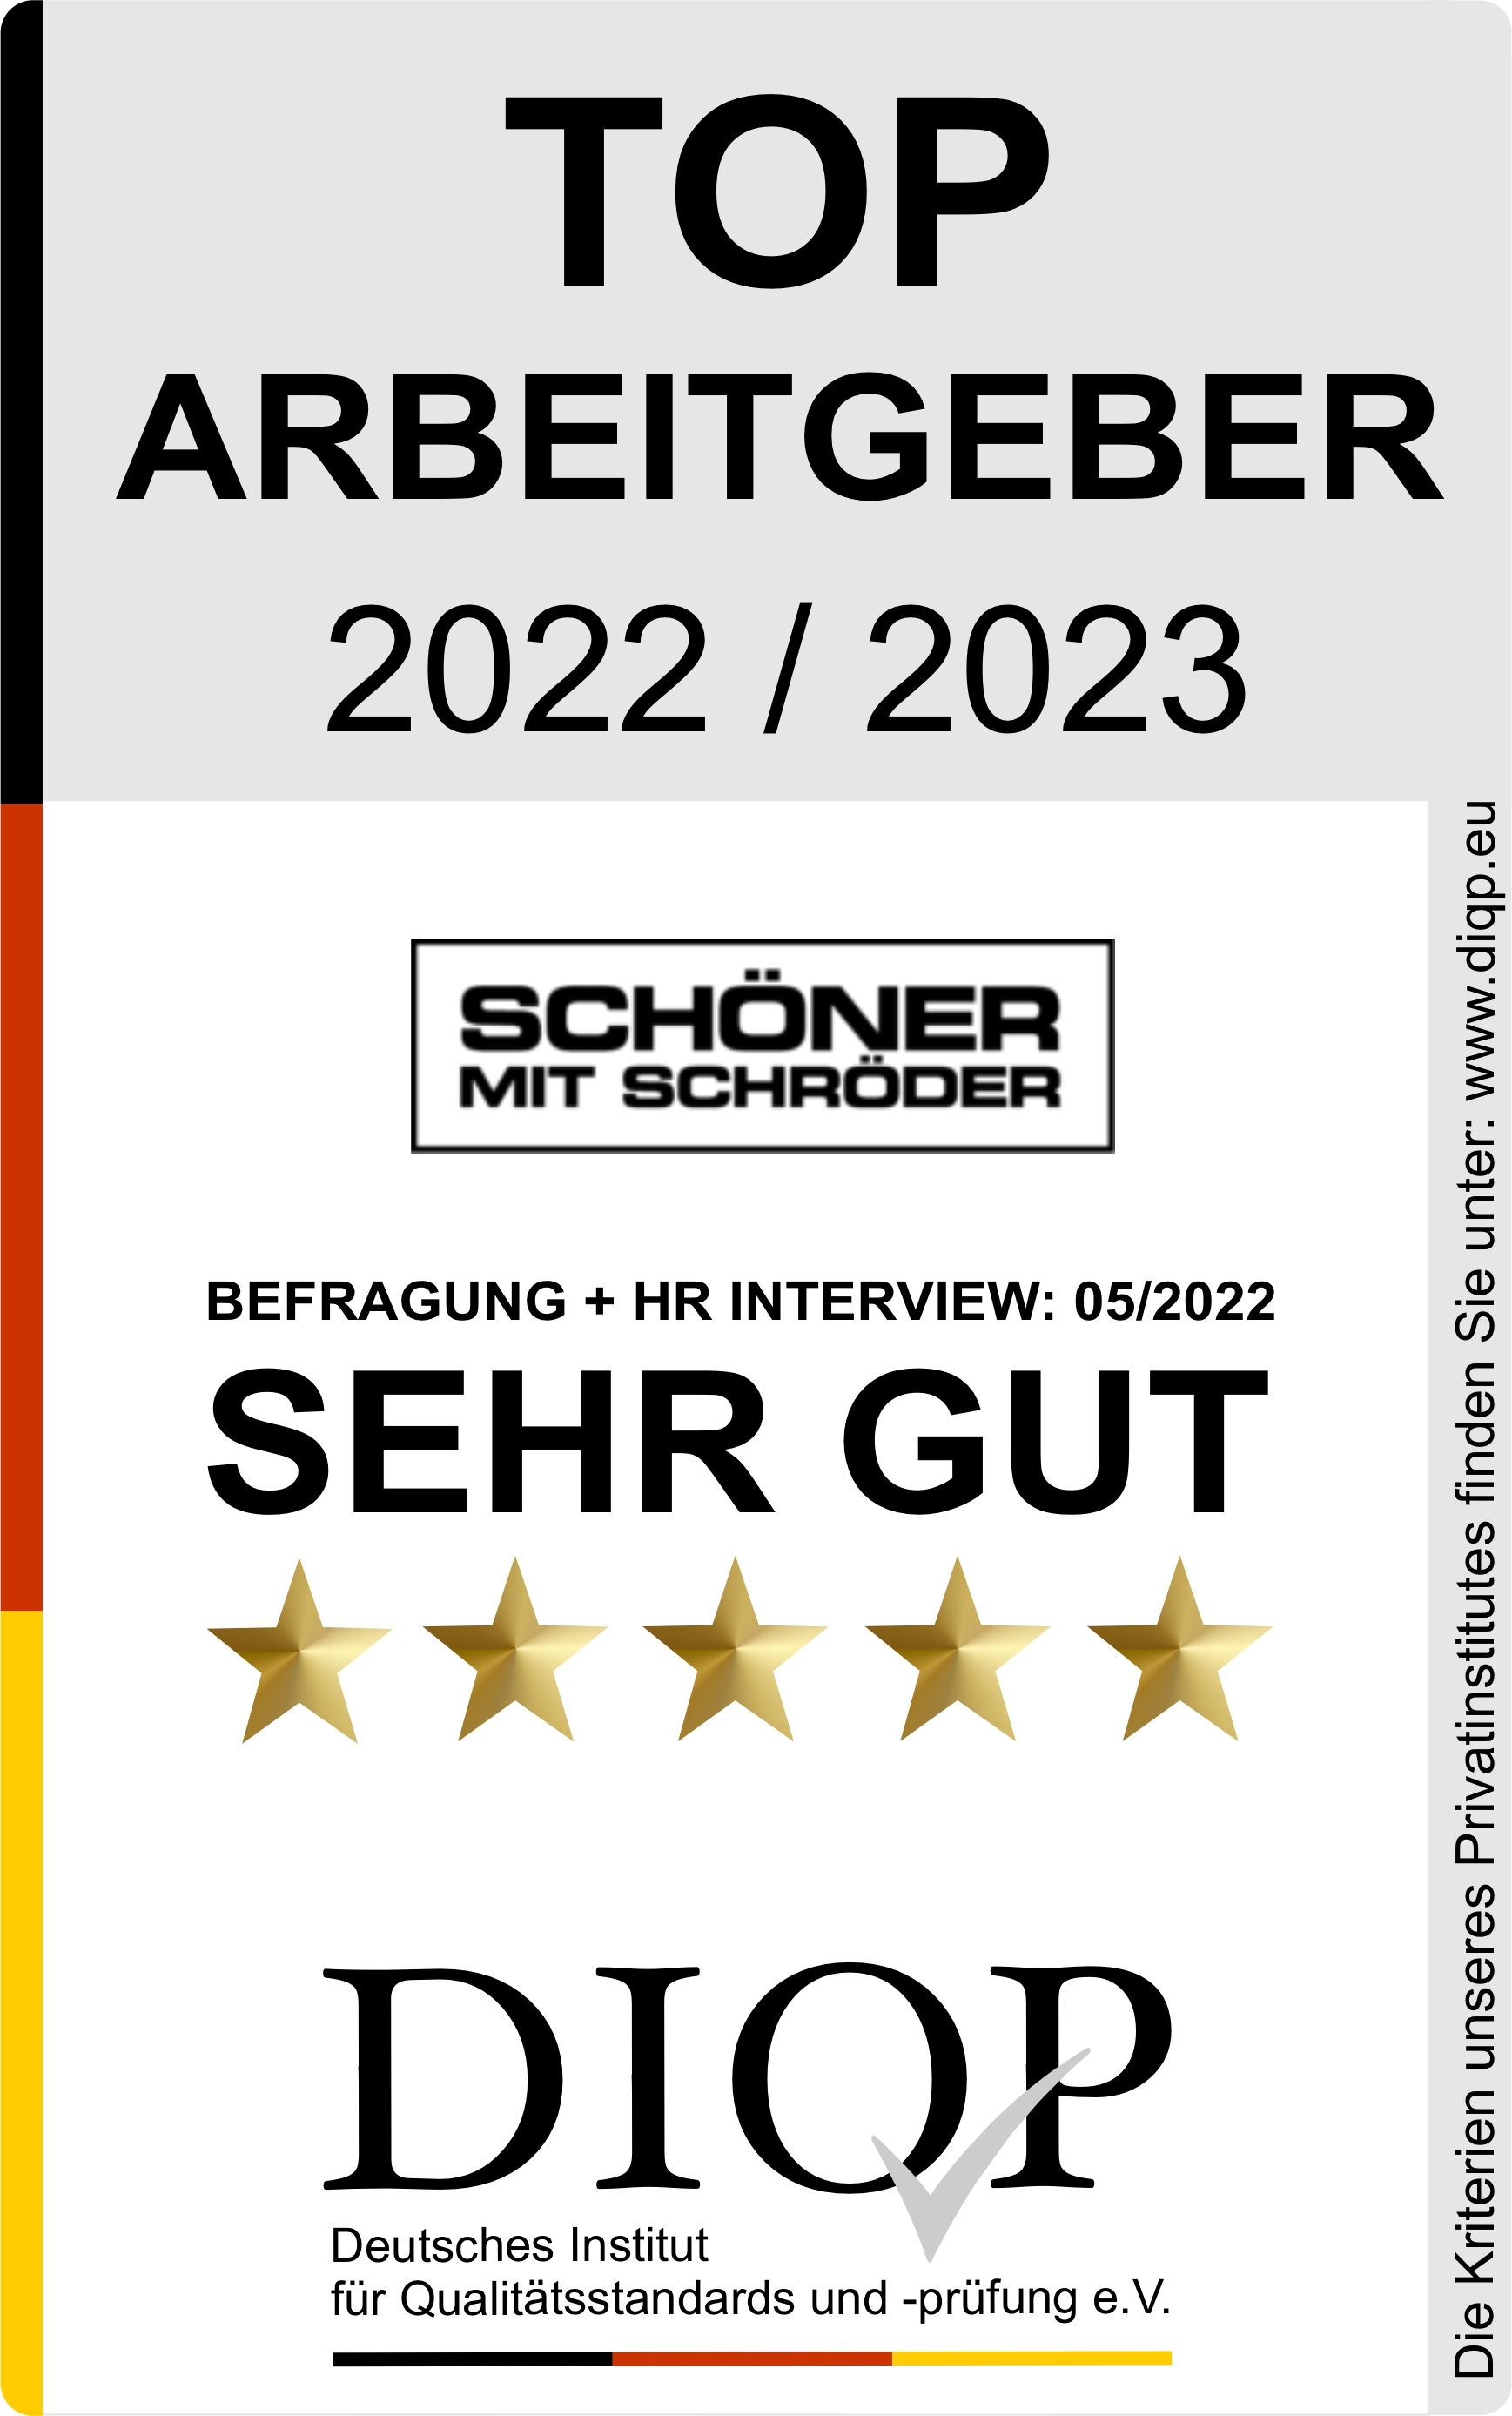 Top Arbeitgeber Mode Schröder 1.jpg